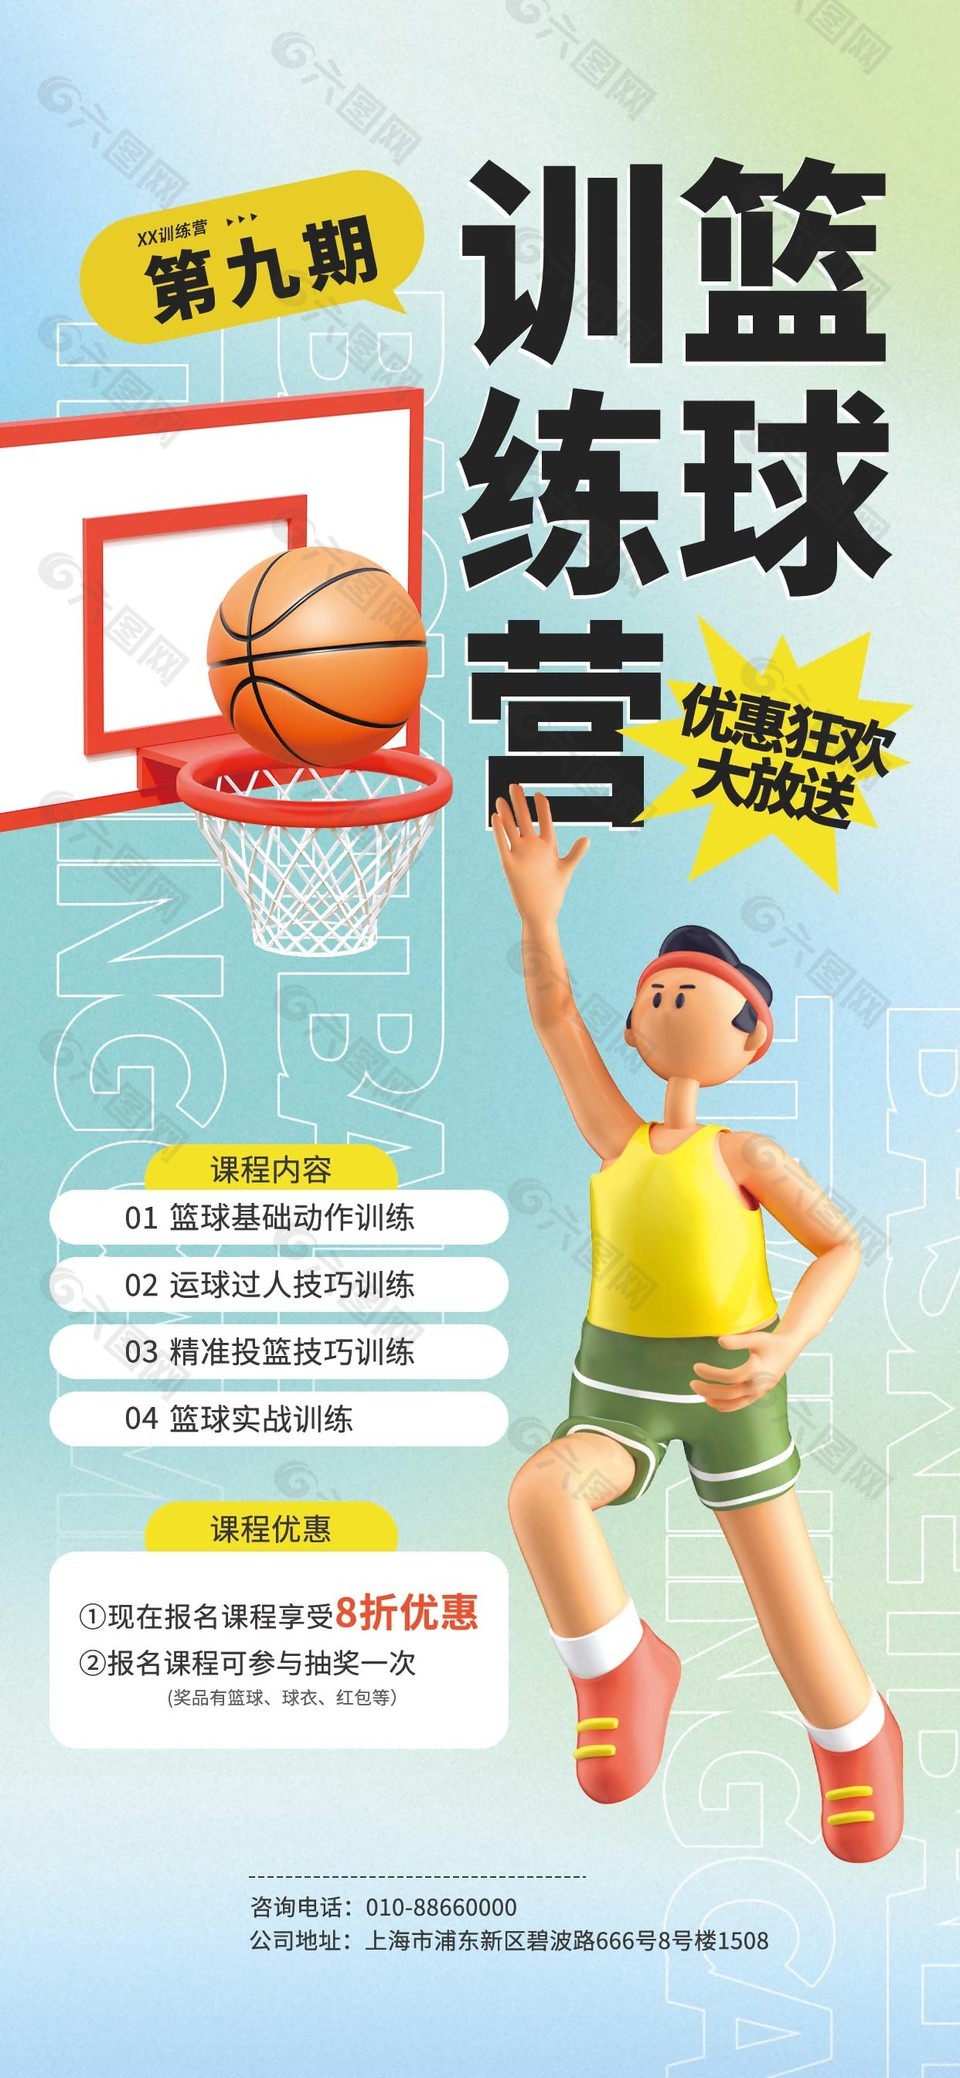 篮球训练营优惠狂欢大放送长图海报下载